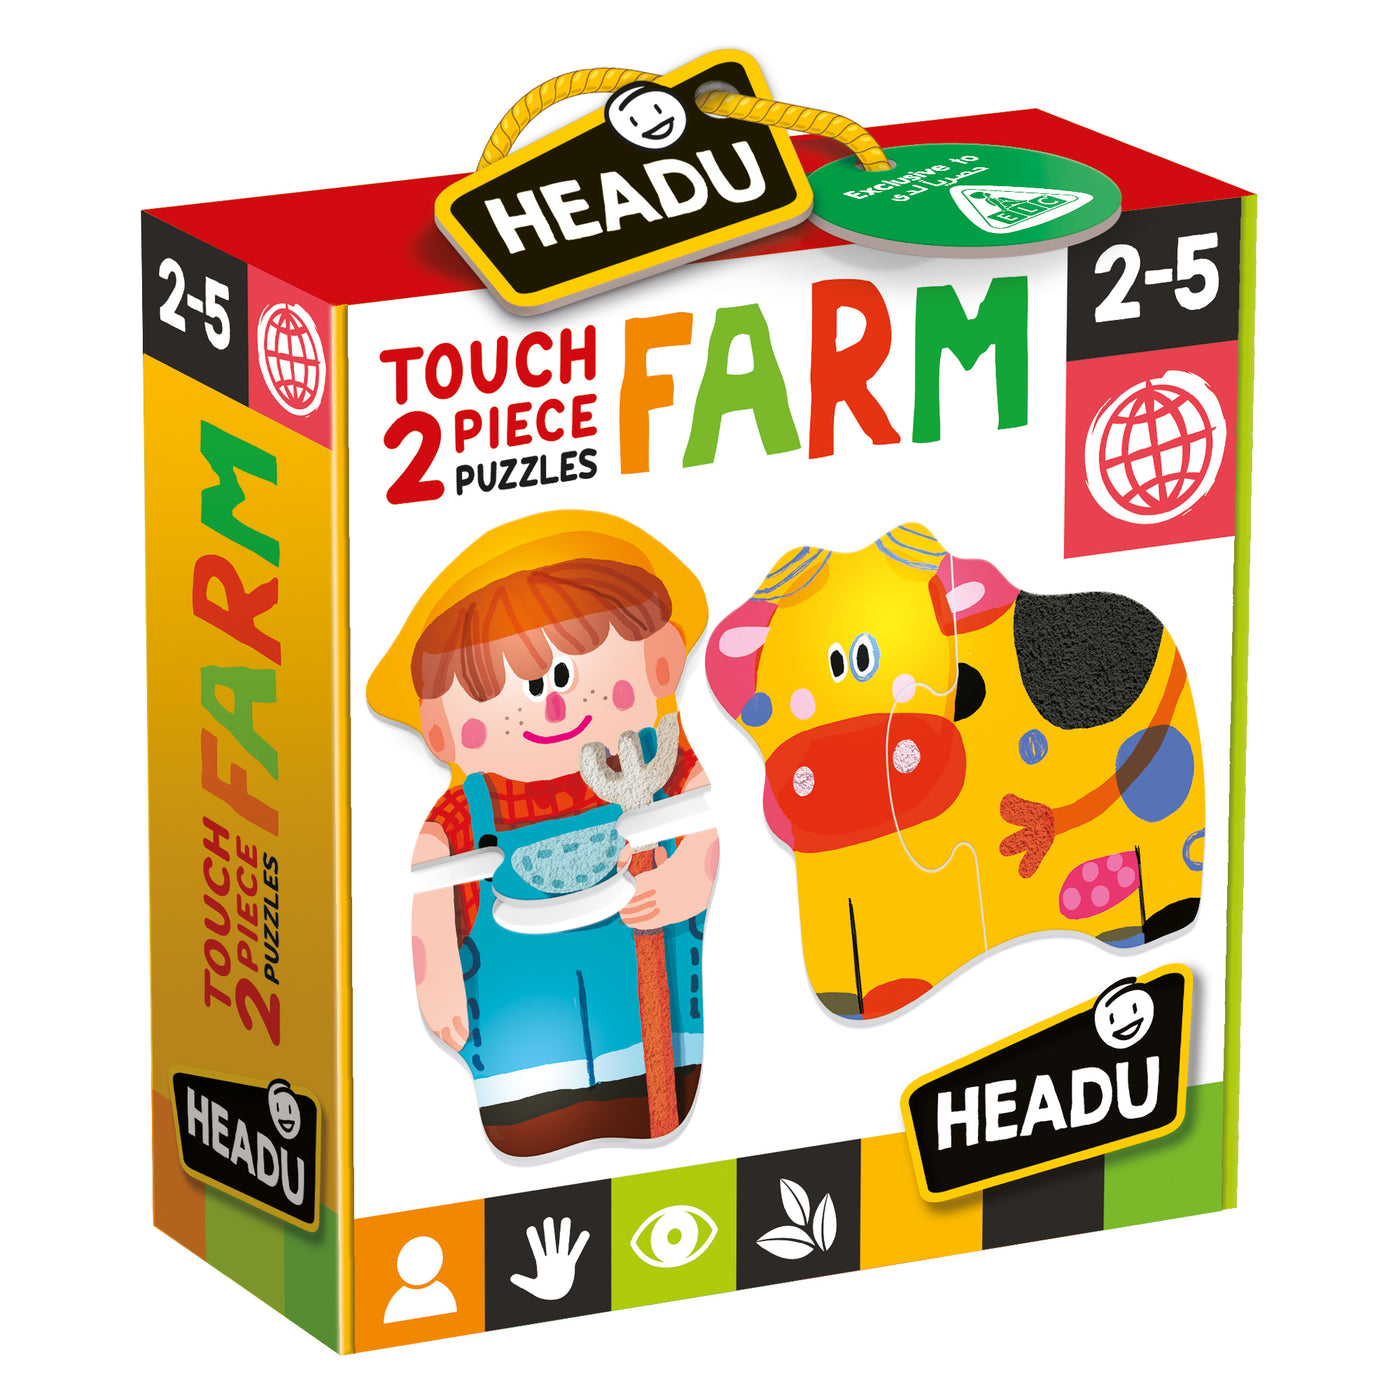 Touch 2-Piece Farm Puzzles